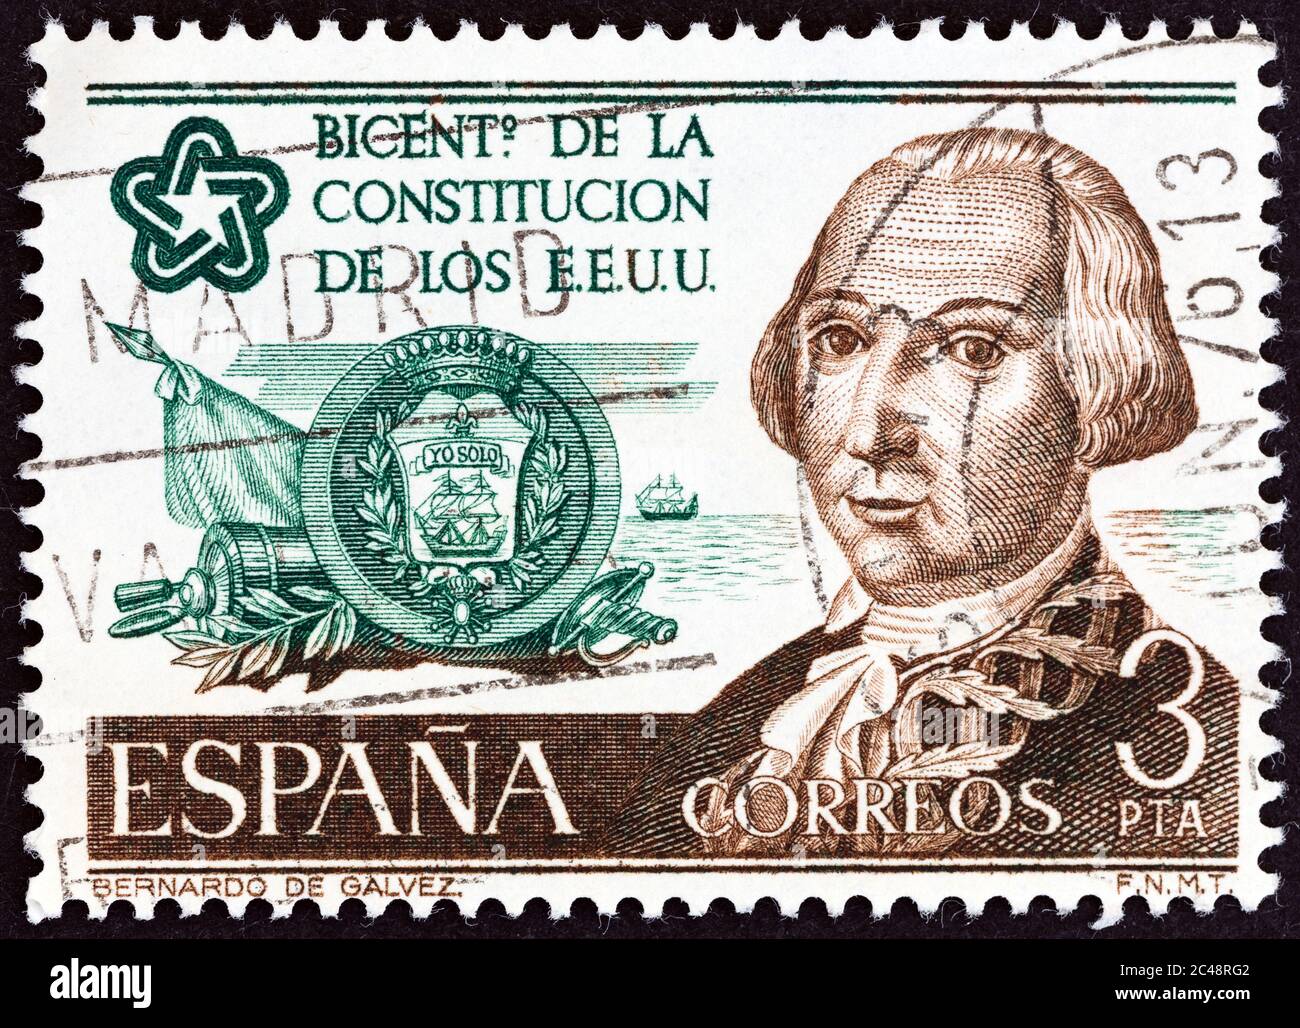 SPAIN - CIRCA 1976: A stamp printed in Spain shows Bernado de Galvez and emblem, circa 1976. Stock Photo